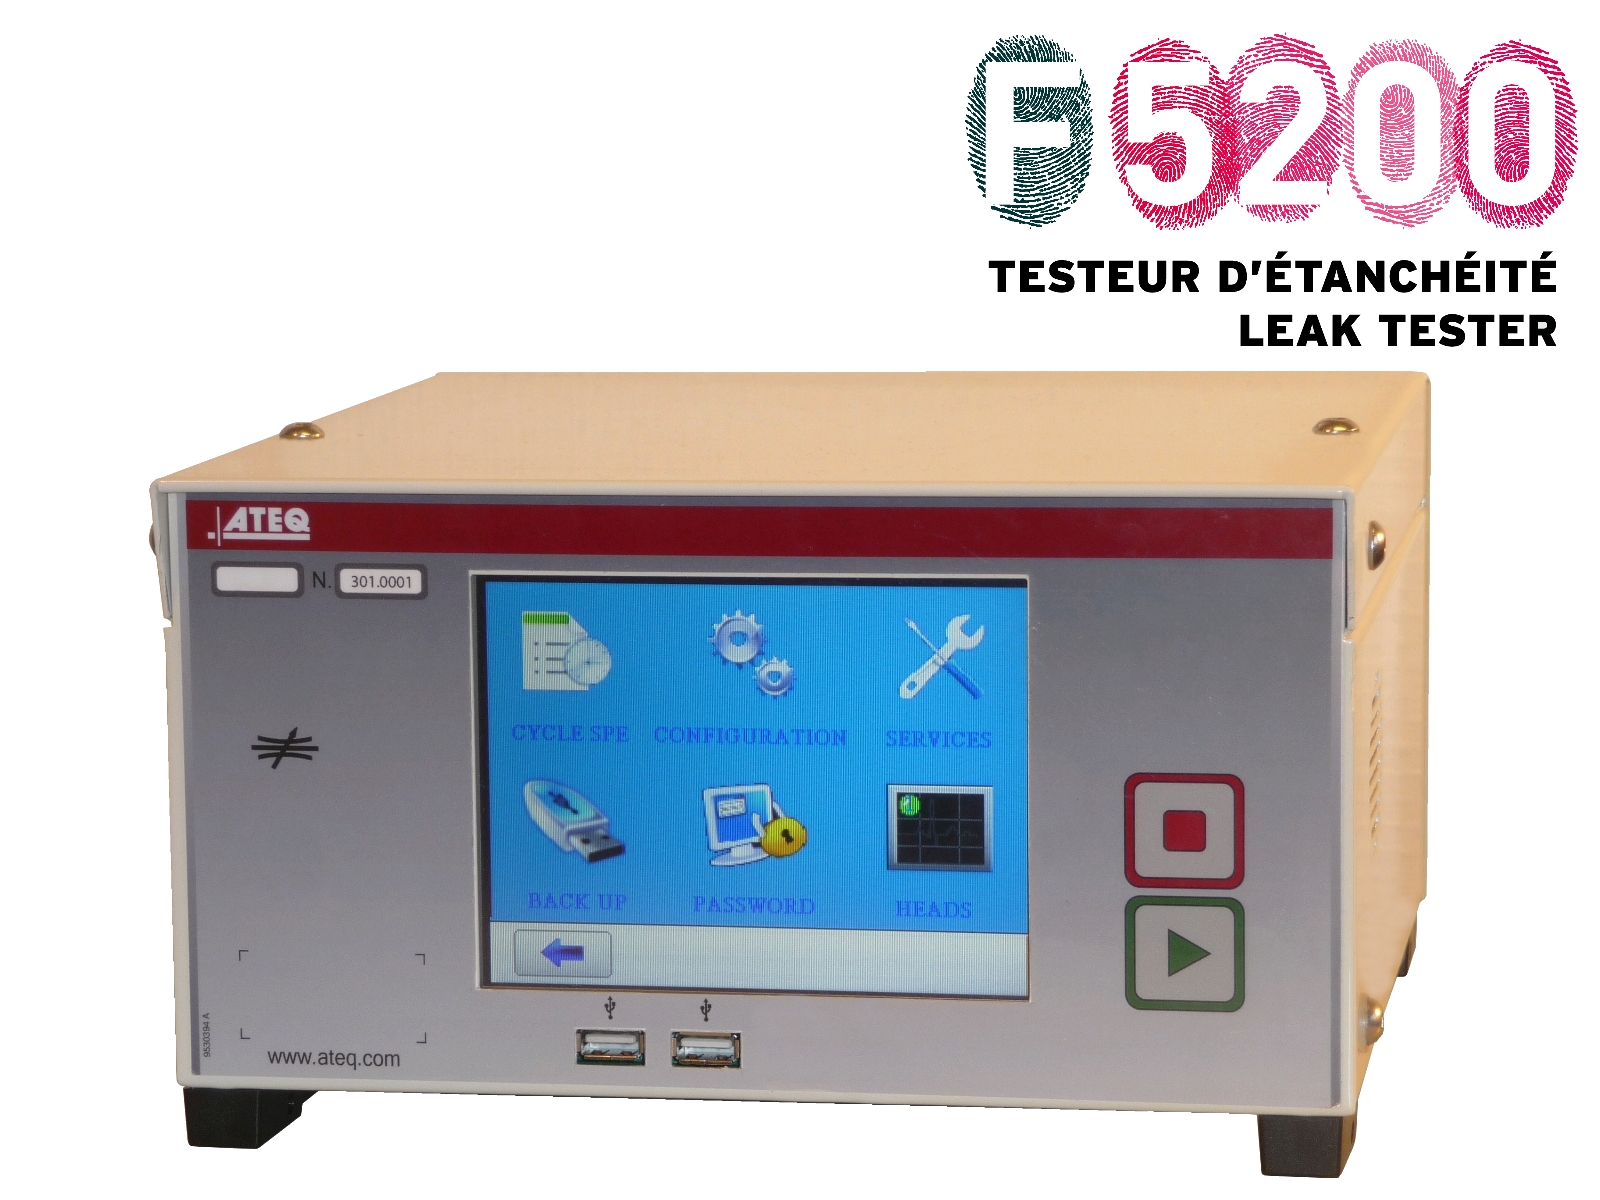 F5200: leak tester - leak detection